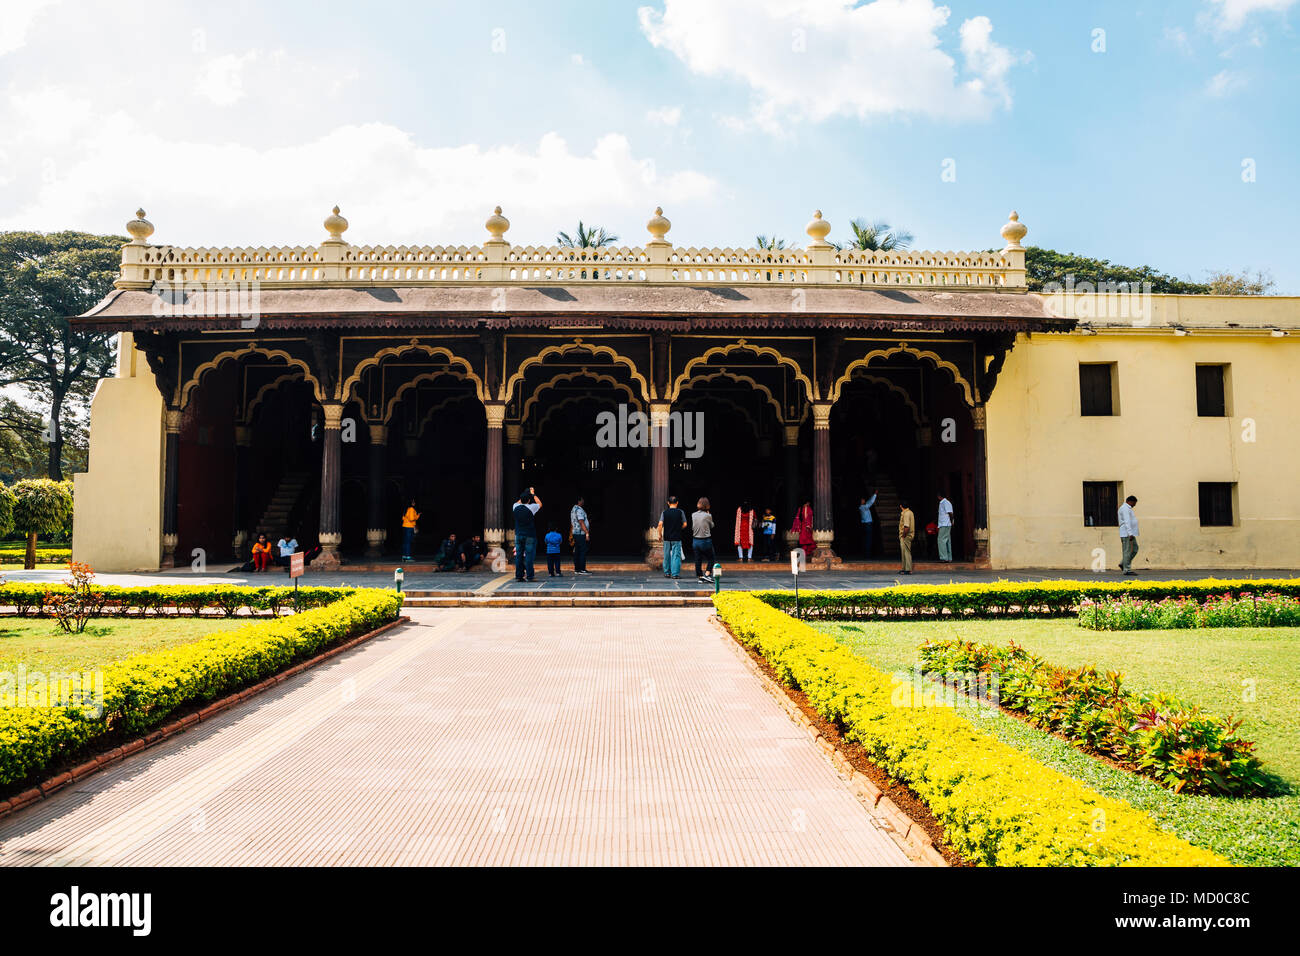 Bangalore, Inde - 1 janvier 2018 : Palais d'été de Tipu Sultan Banque D'Images